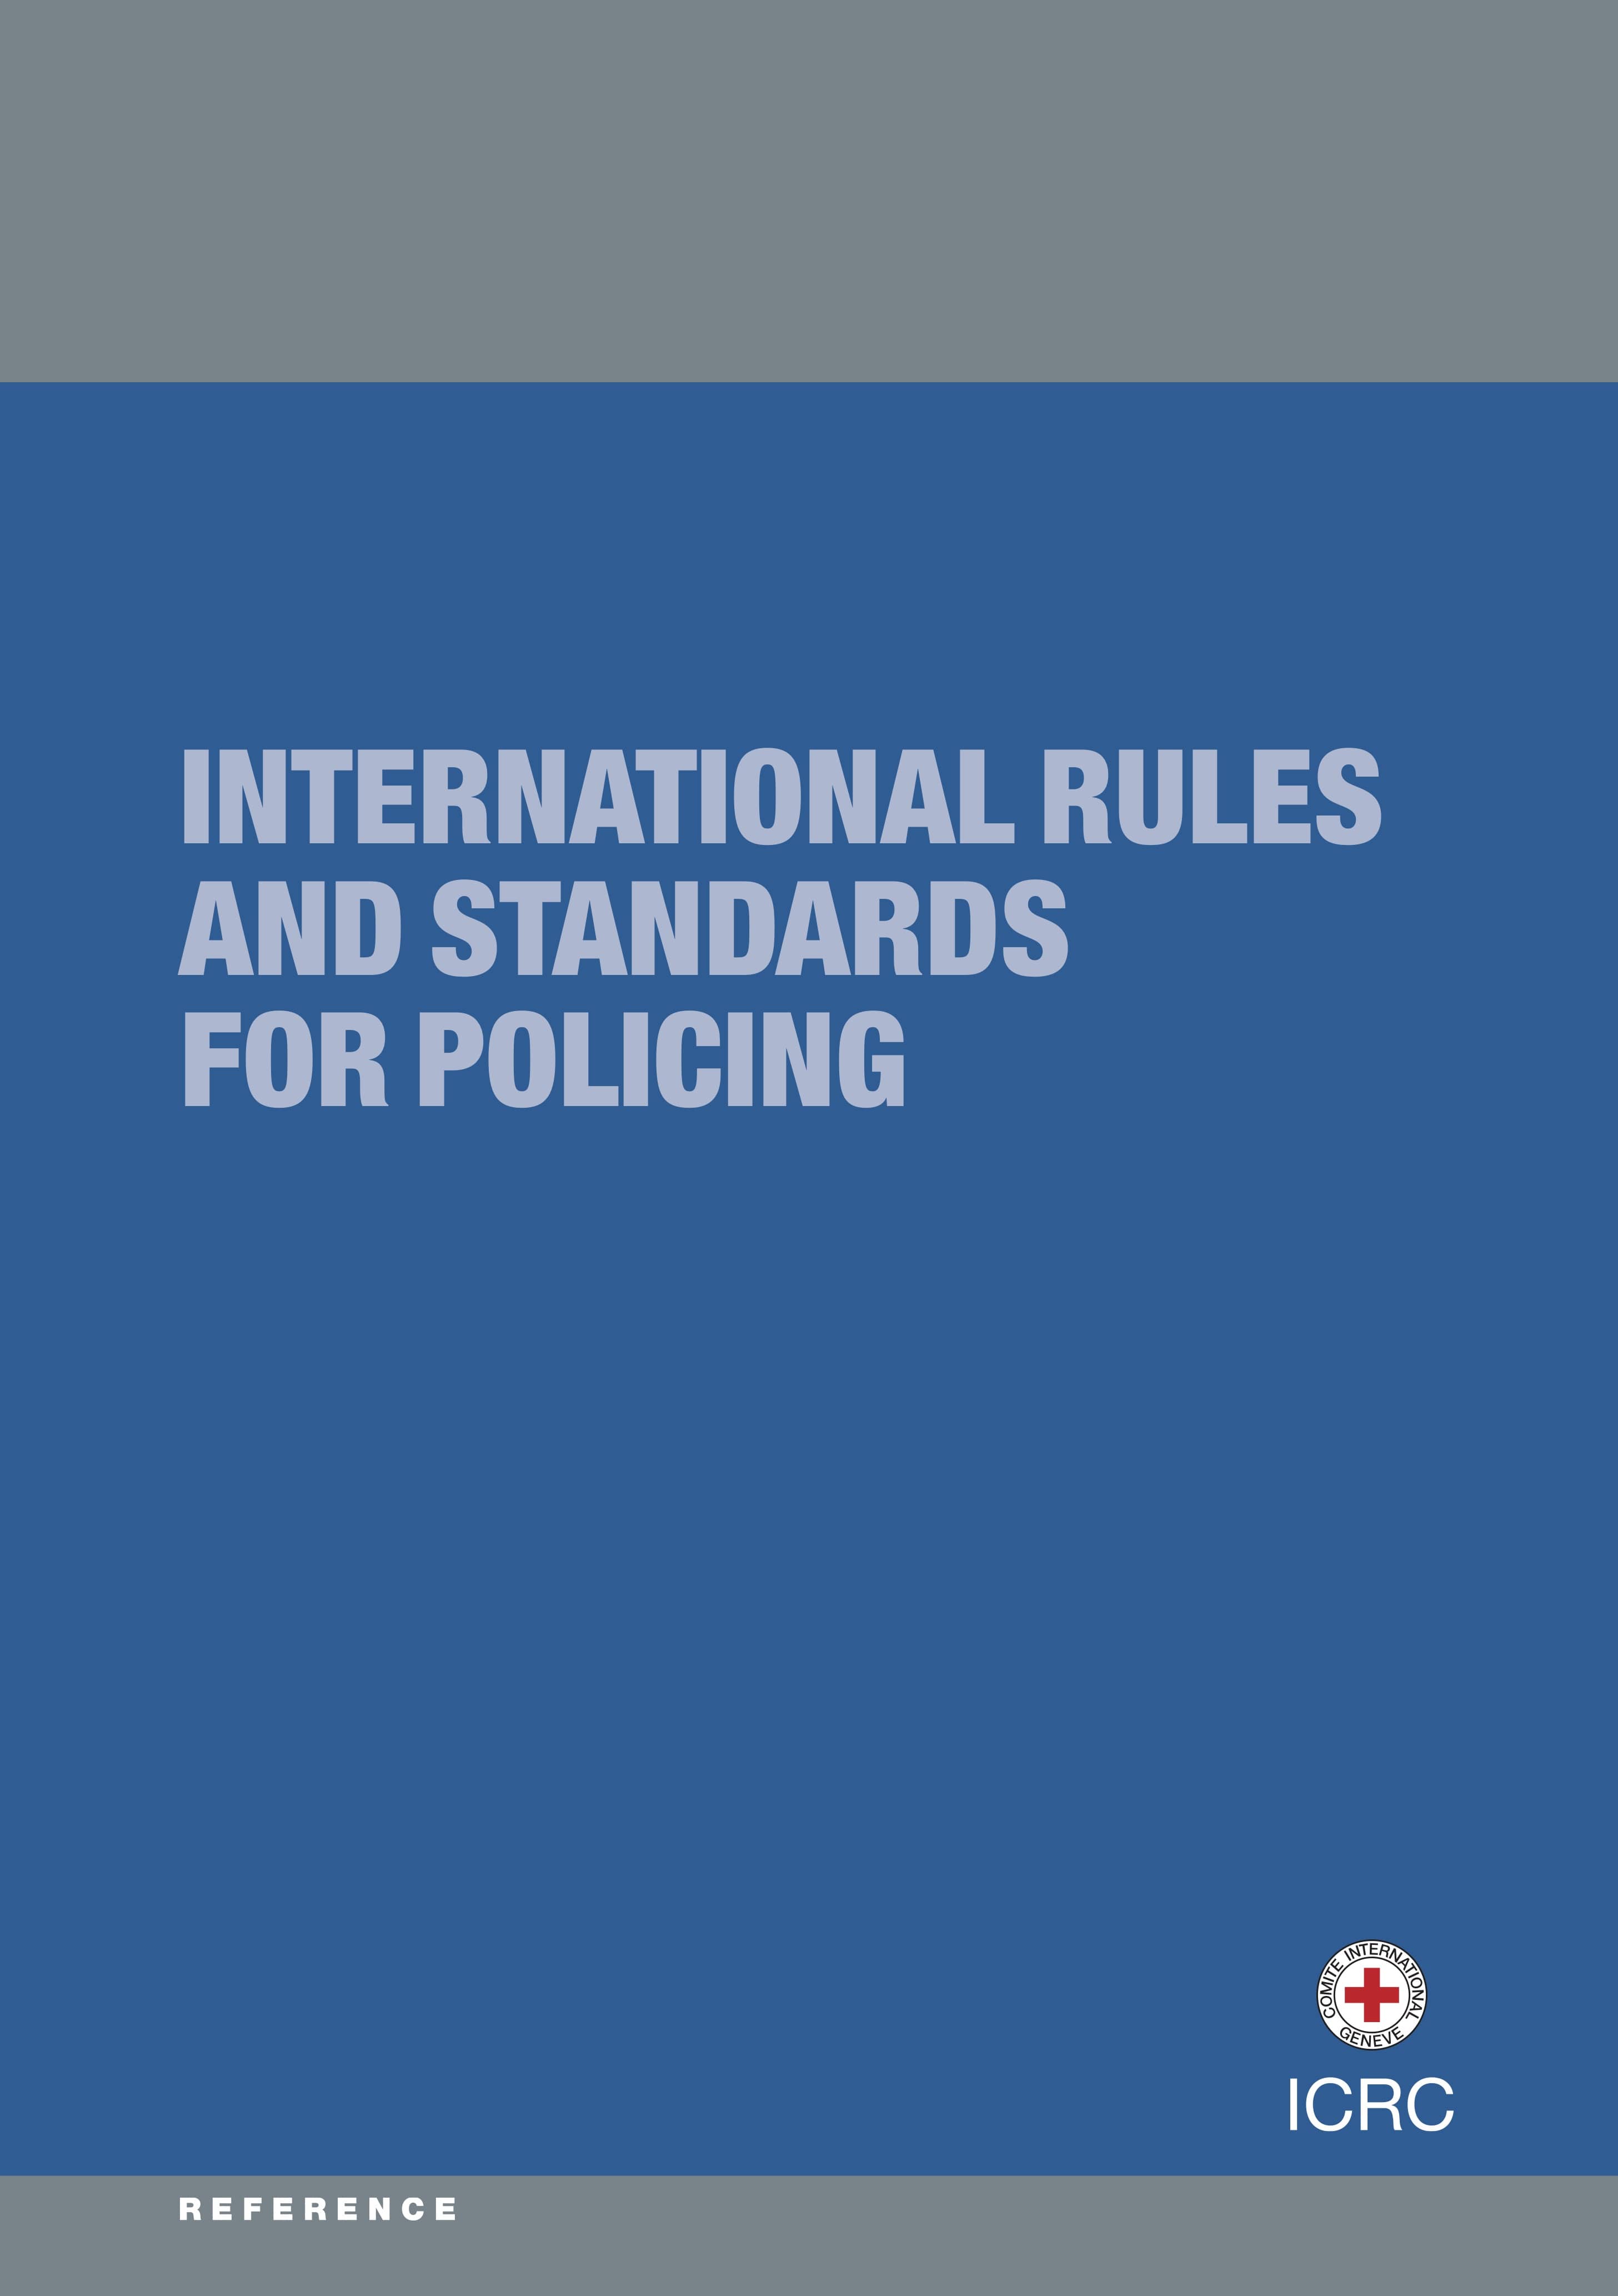 Règles et normes internationales applicables à la fonction policière et aux forces de l’ordre (CICR, 2014)